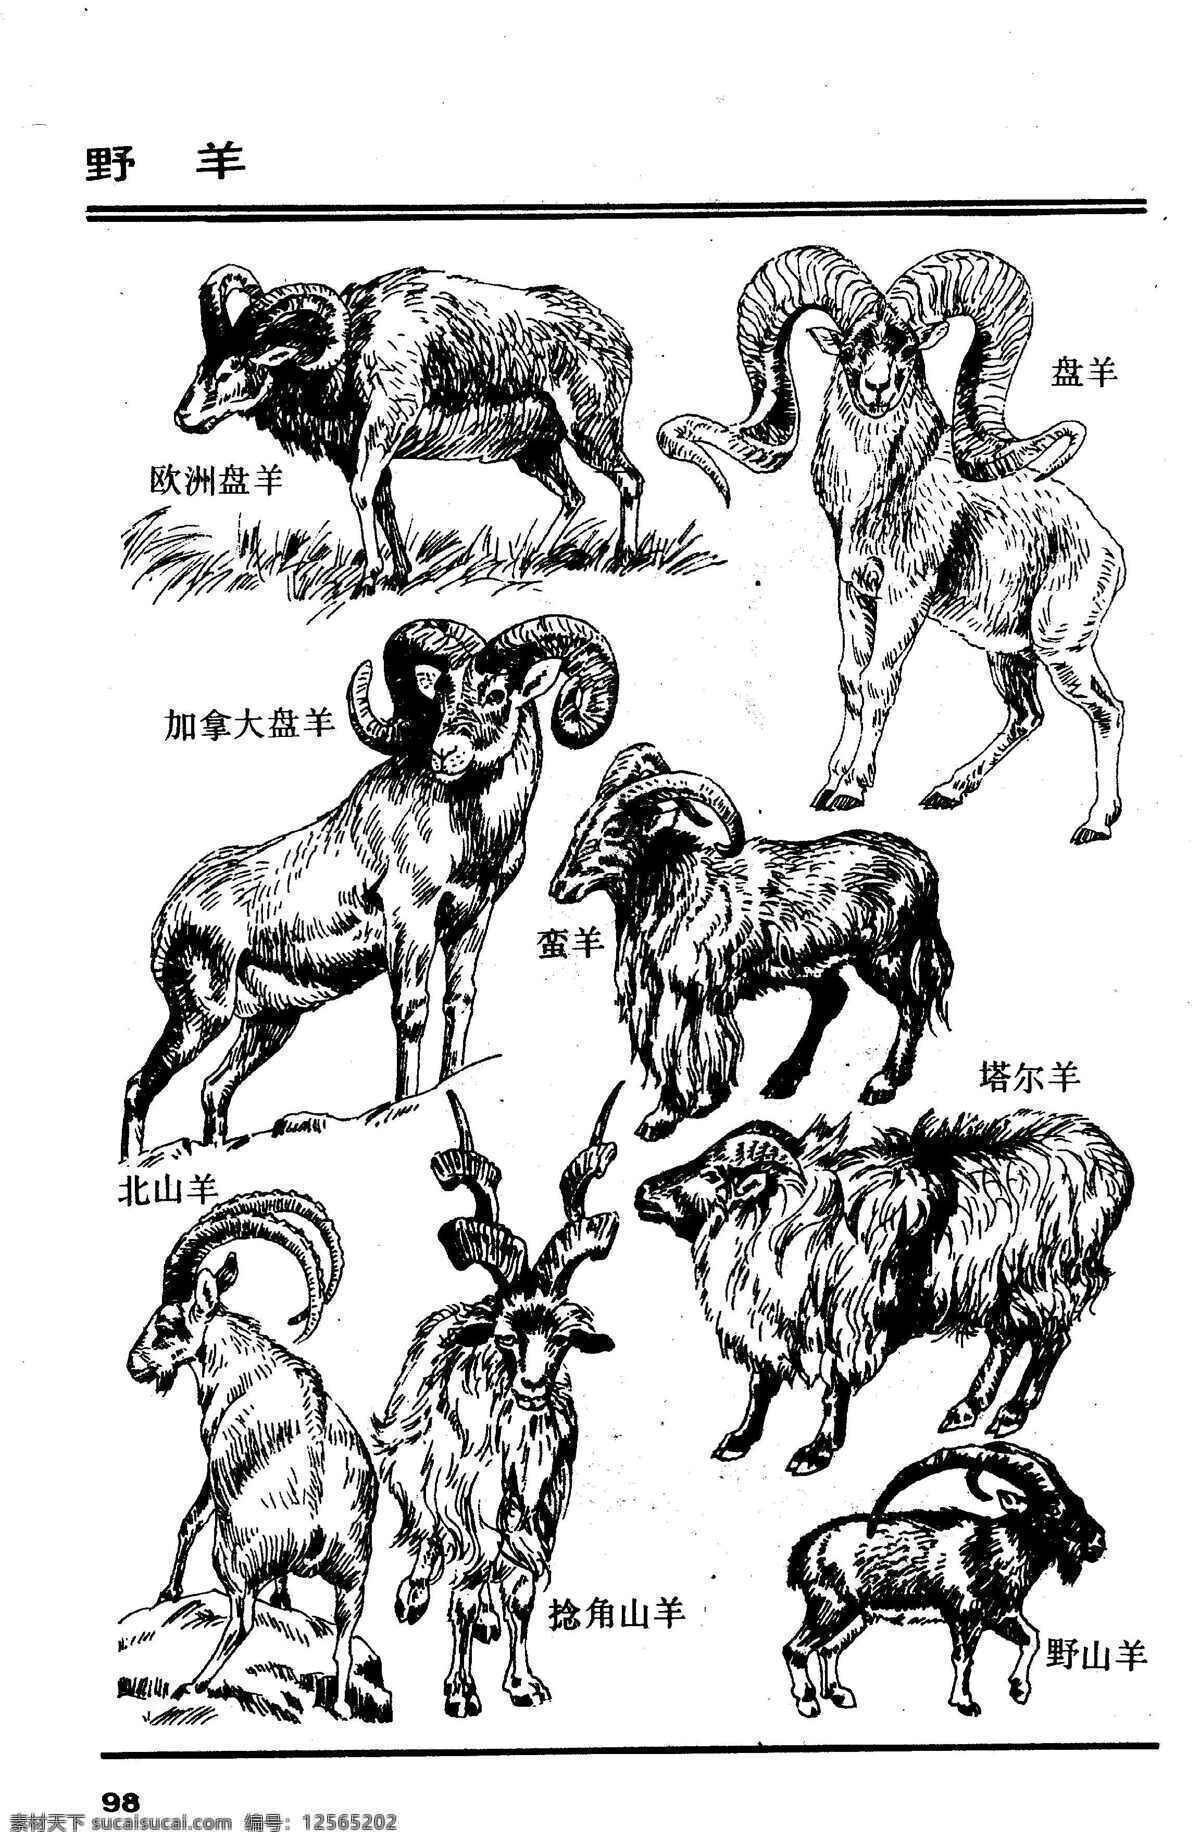 百兽谱 野羊 百兽 兽 家禽 猛兽 动物 白描 线描 绘画 美术 禽兽 野生动物 百兽图 羊 羊羔 生物世界 设计图库